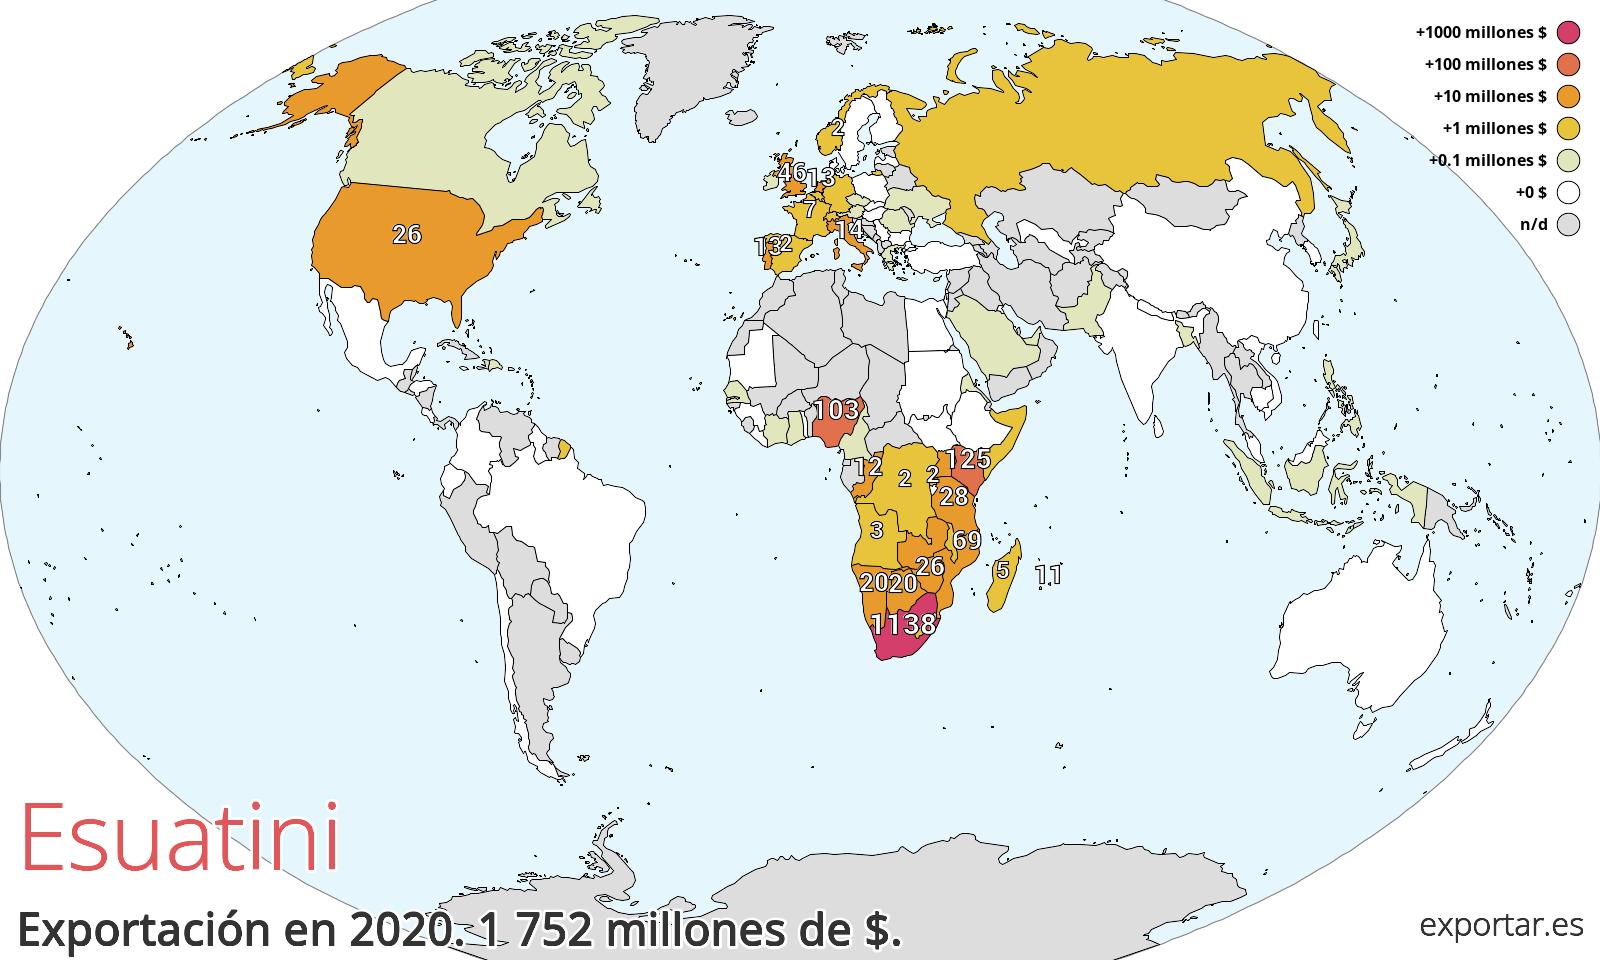 Mapa de exportación de Esuatini en 2020.